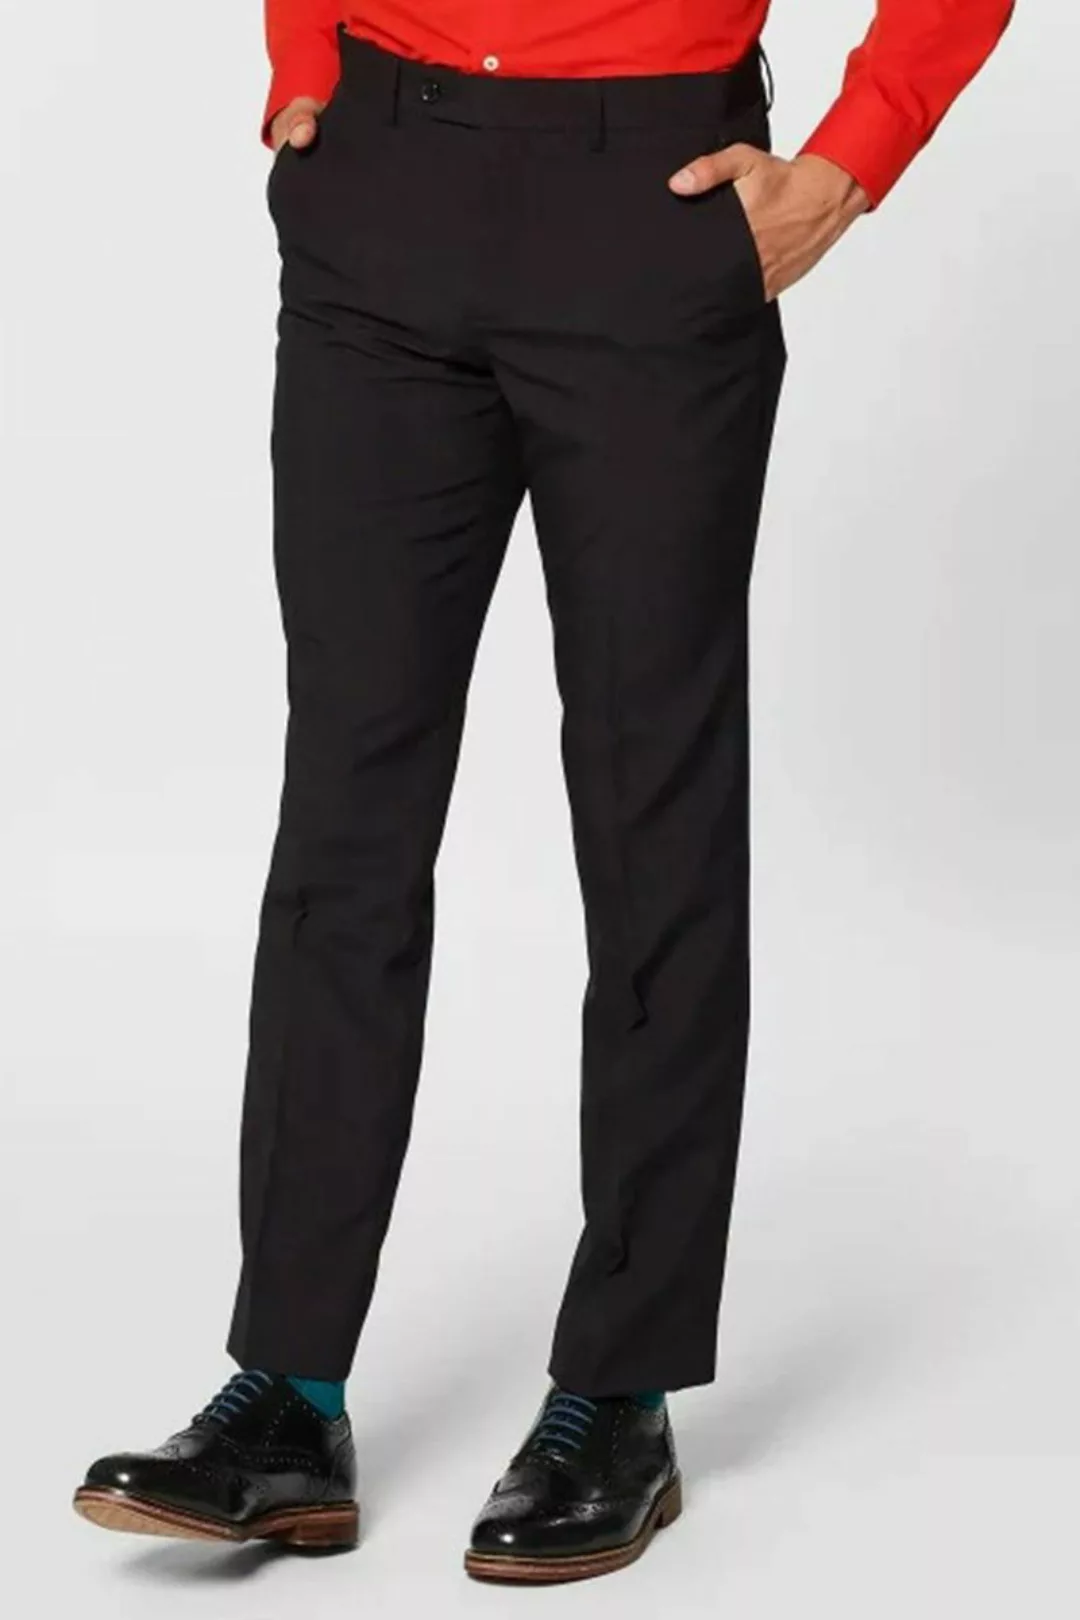 Opposuits Anzug Black Knight Ausgefallene Anzüge für coole Männer günstig online kaufen